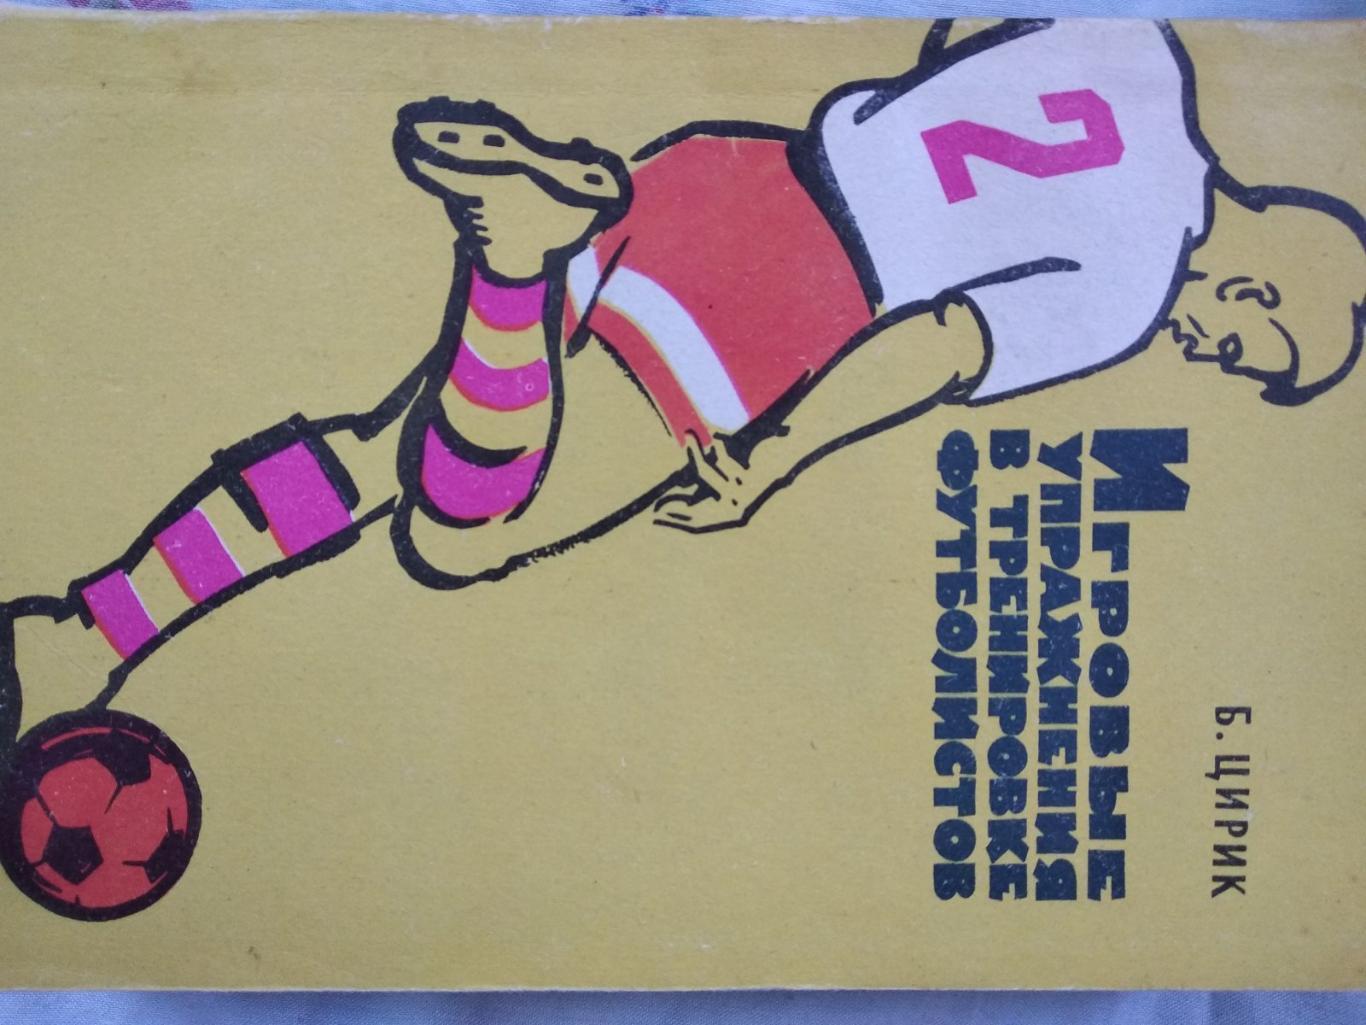 книга-посібник. цирик. ігрові вправи в тренуванні футболістів. випуск 1966 року.